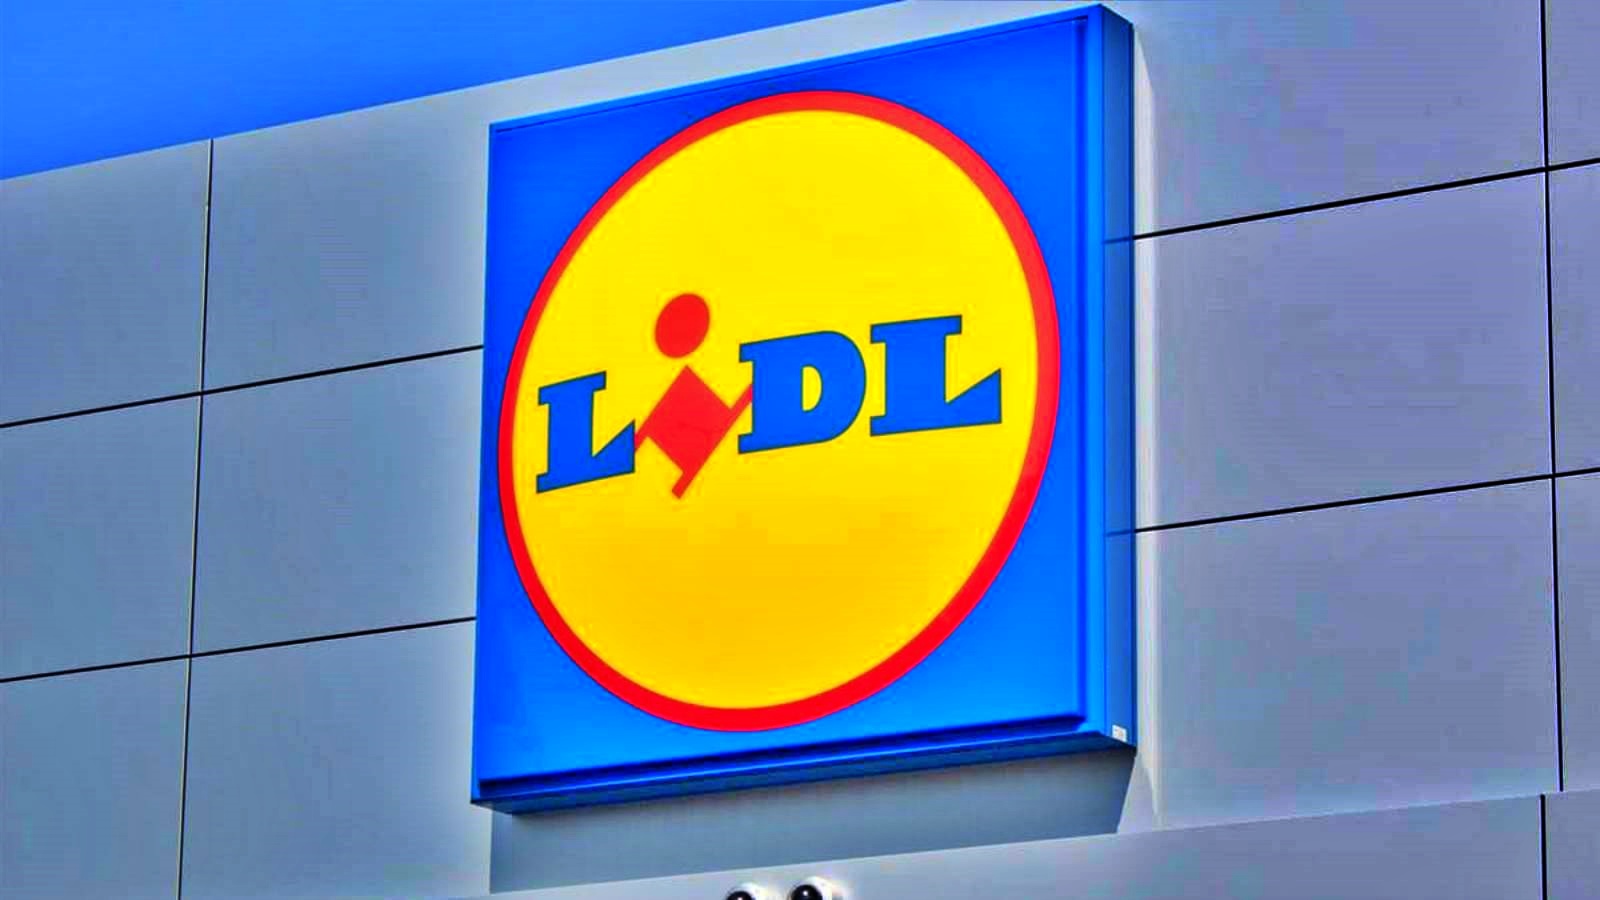 Klienci LIDL Rumunia ogłosili nowe zmiany w sklepie